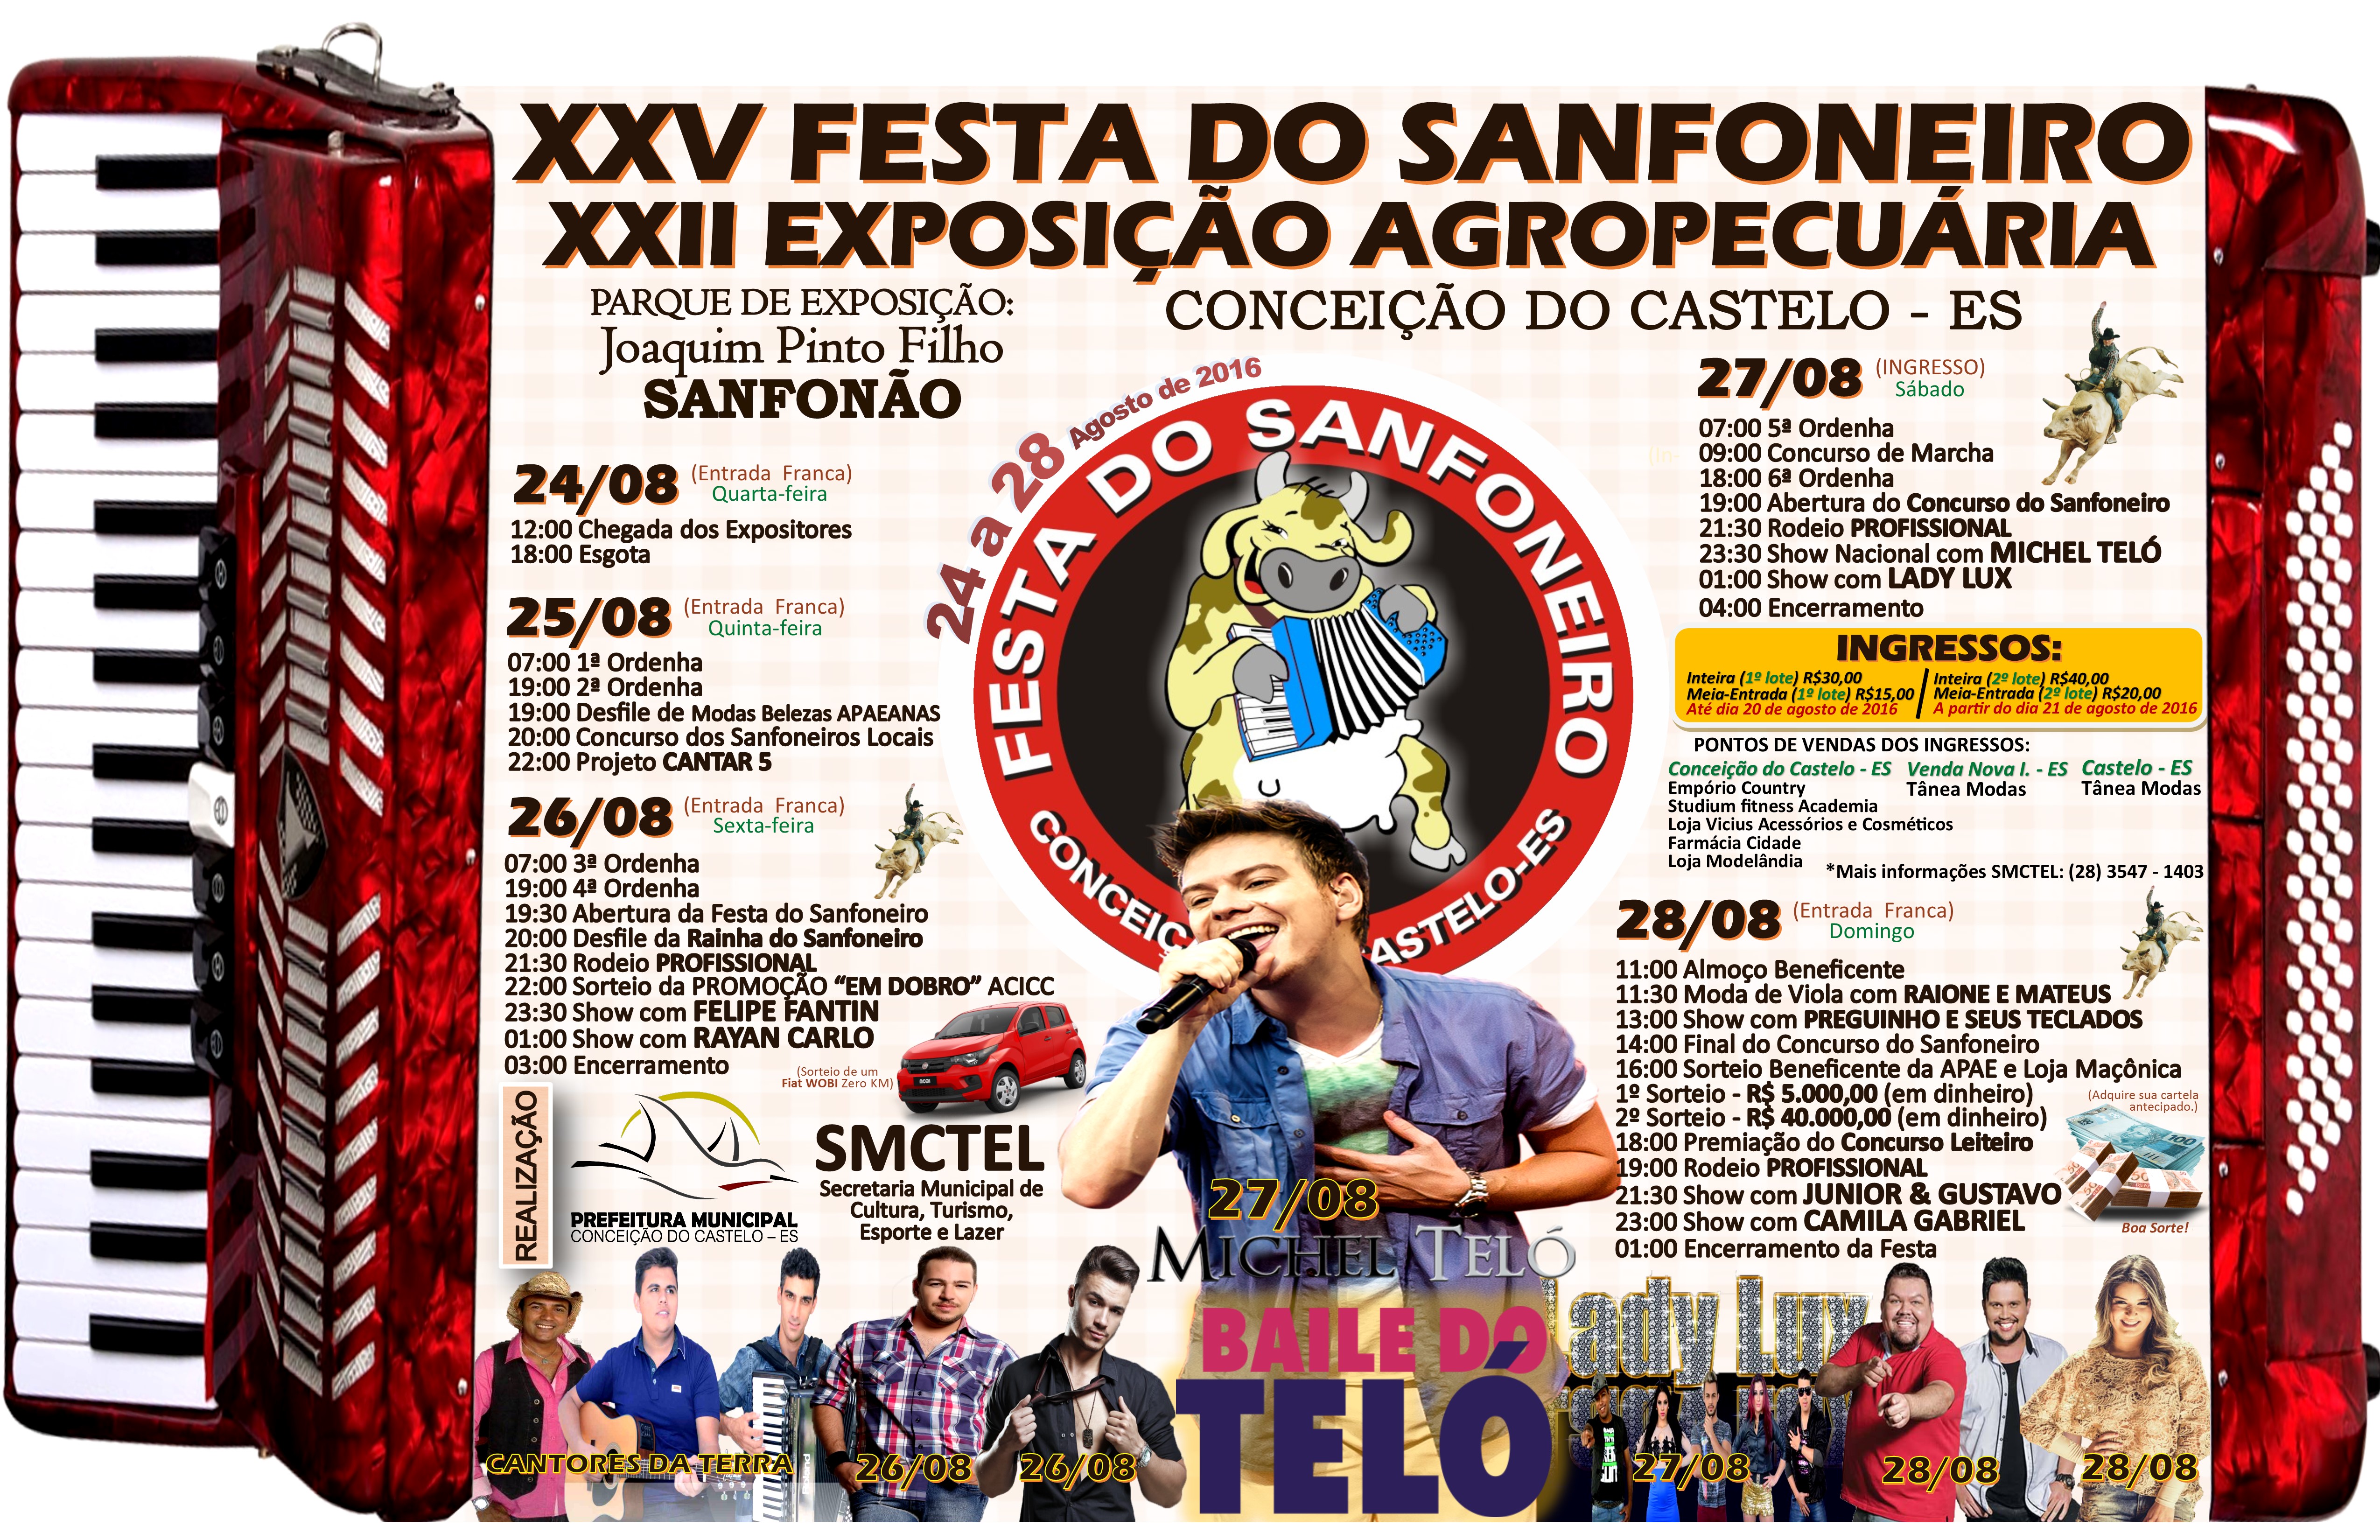 25ª Festa do Sanfoneiro e 22ª Exposição Agropecuária – 24 a 28/AGO 2016 - Conceição do Castelo/ES